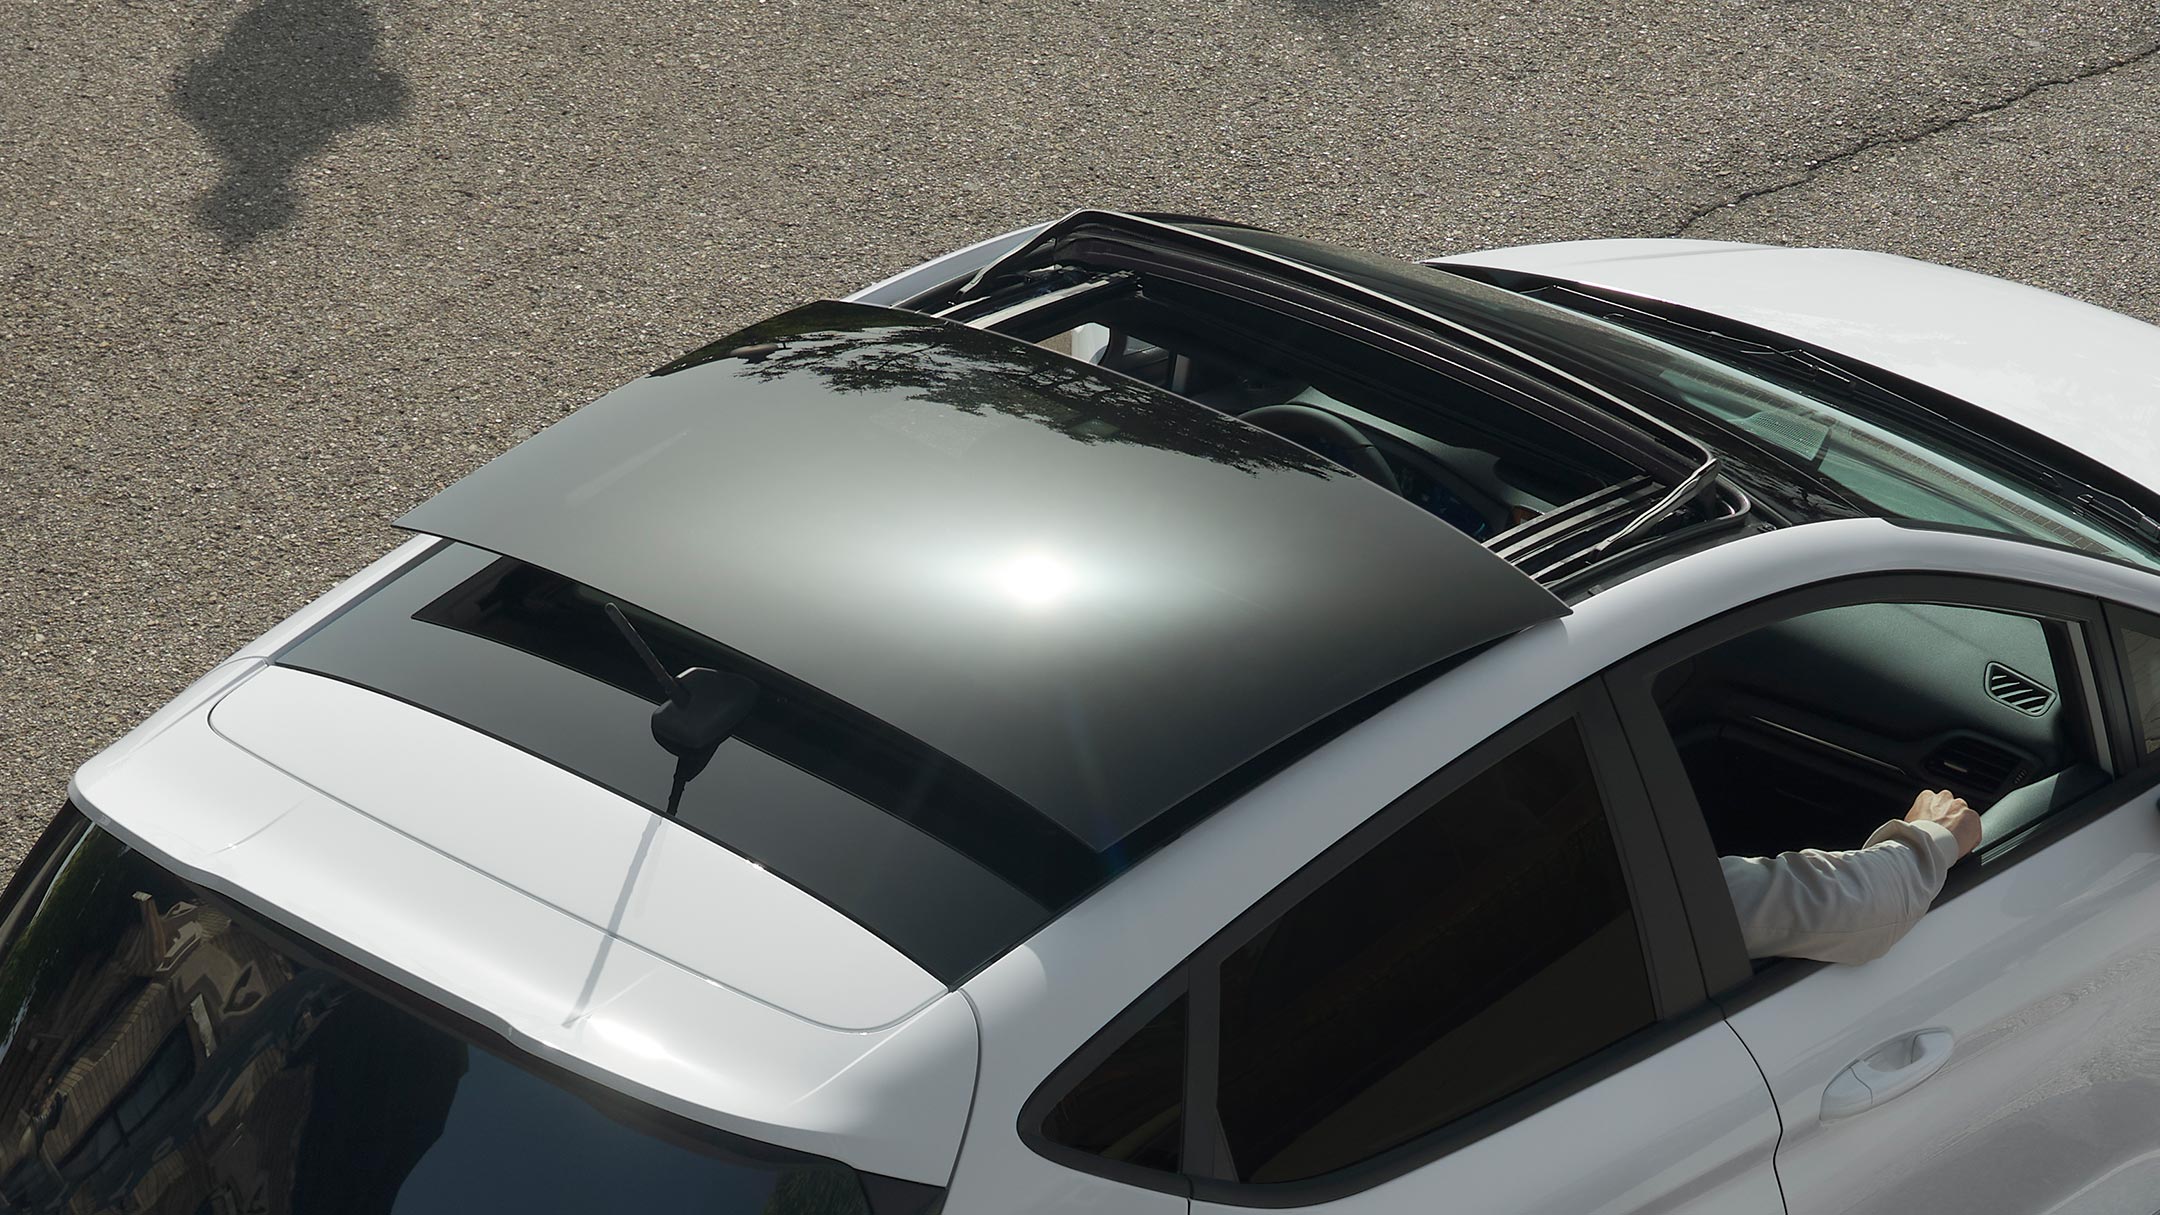 Ford Fiesta bianca. Vista posteriore a tre quarti dall’alto del modello con tetto panoramico apribile, in transito su una strada.